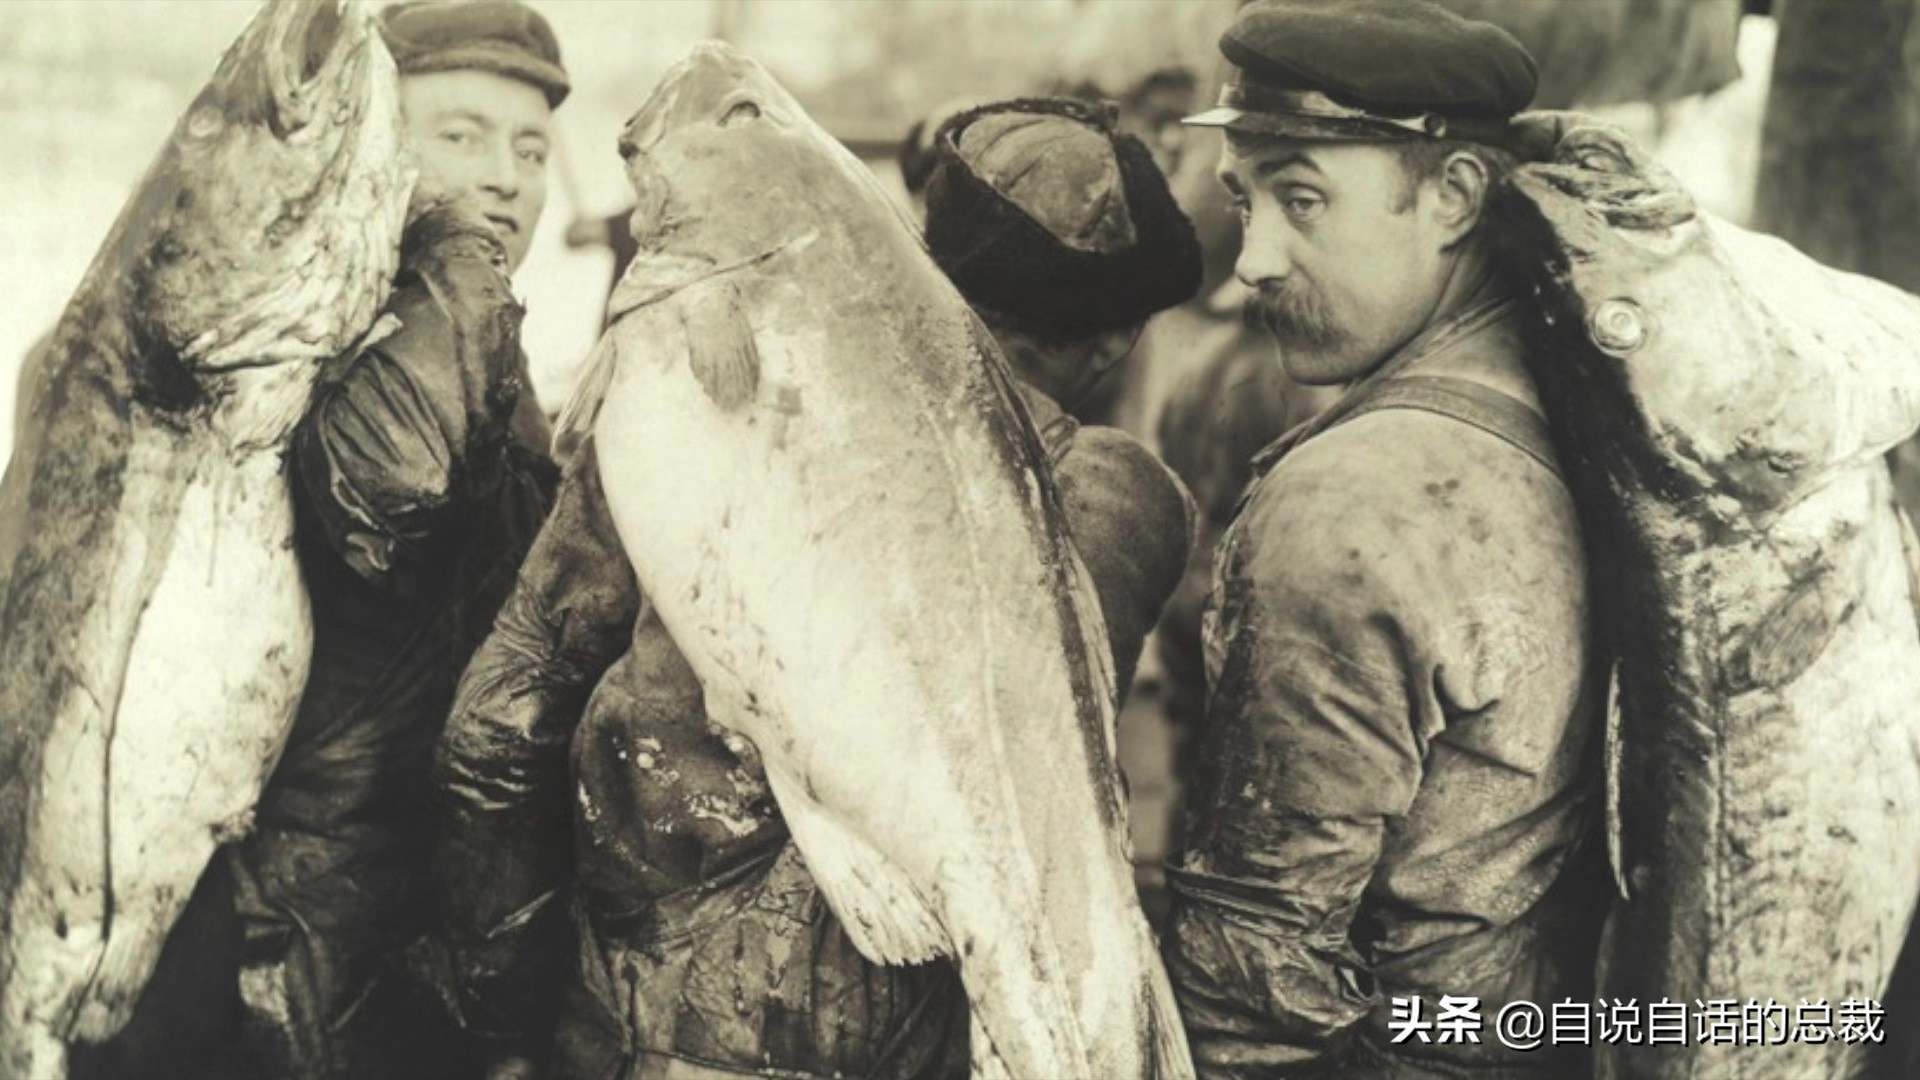 为什么买到的鳕鱼都是假的？这背后，原来是它曾经改变世界的故事